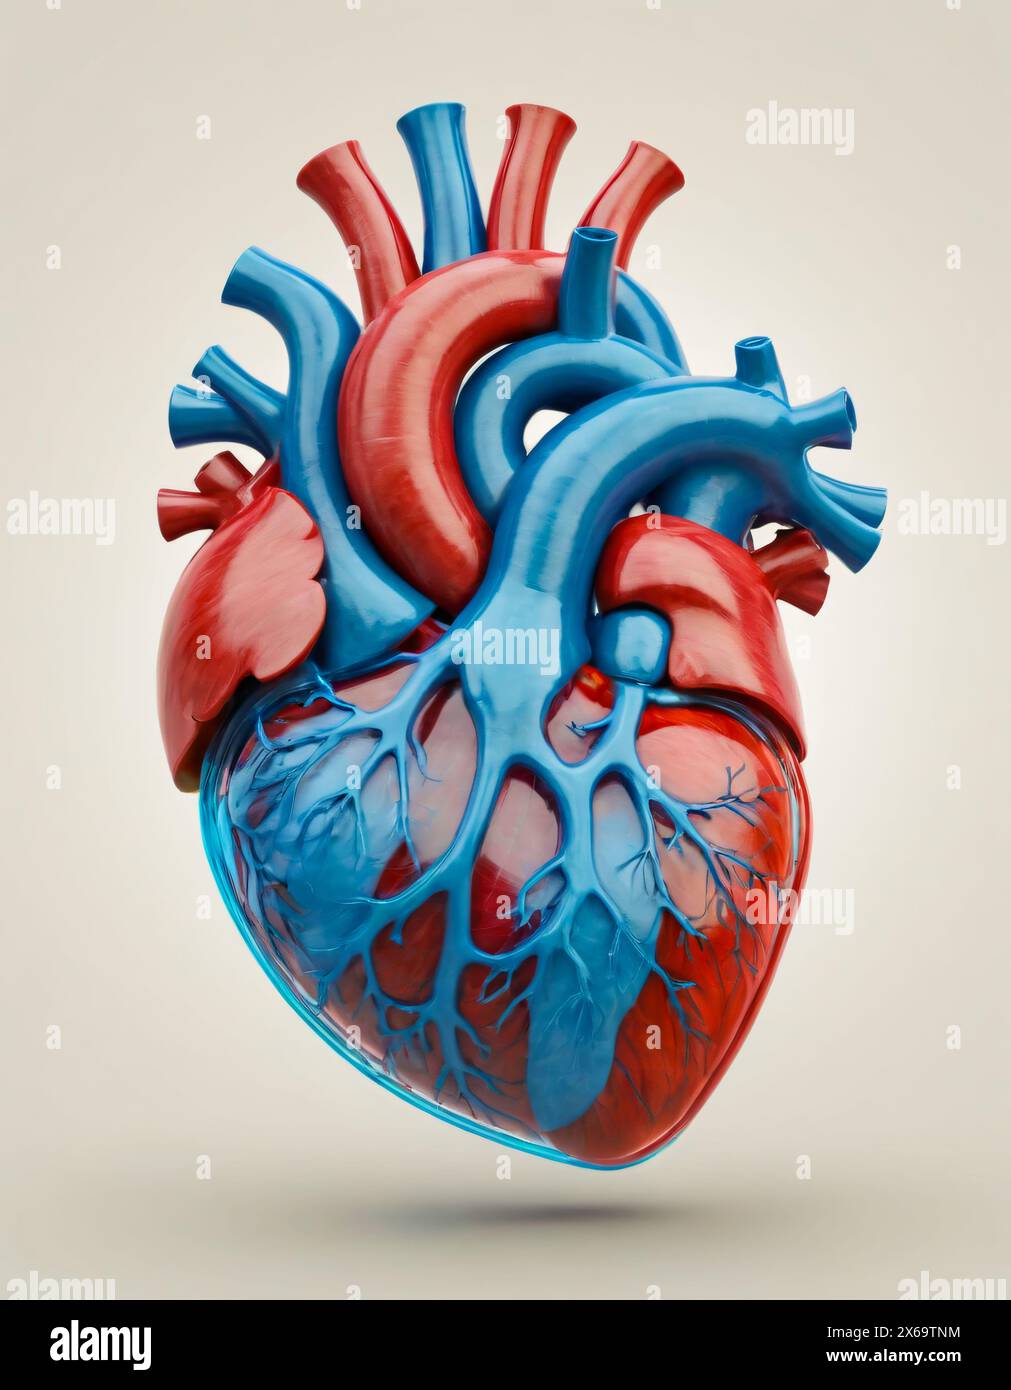 Menschliches Herz, realistische Darstellung. Keramik und Kristallblau und Rot Stockfoto